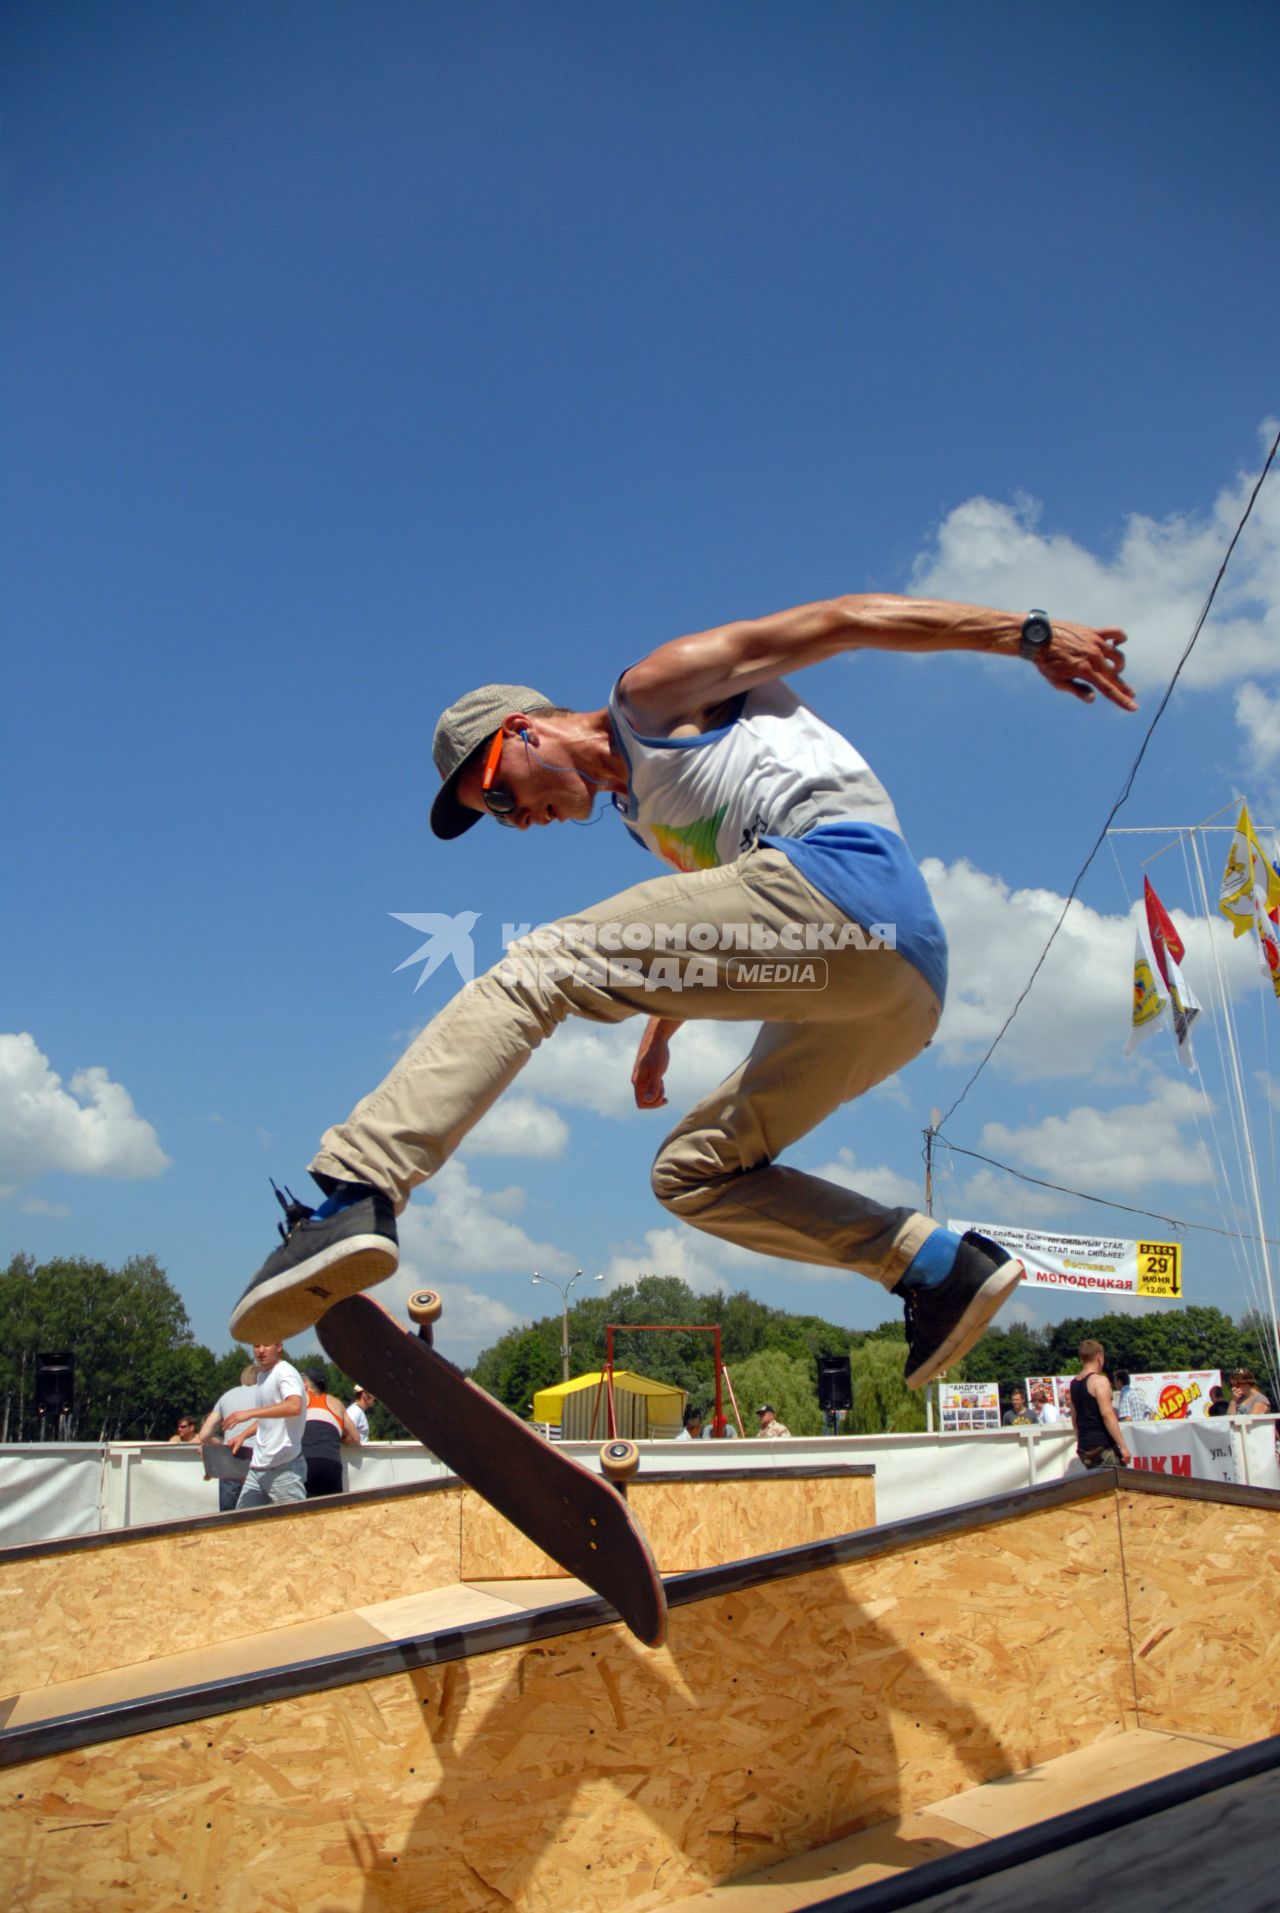 Соревнования по экстремальному скейту среди молодежи в Тульском парке. На снимке: участник соревнований выполняет прыжок.